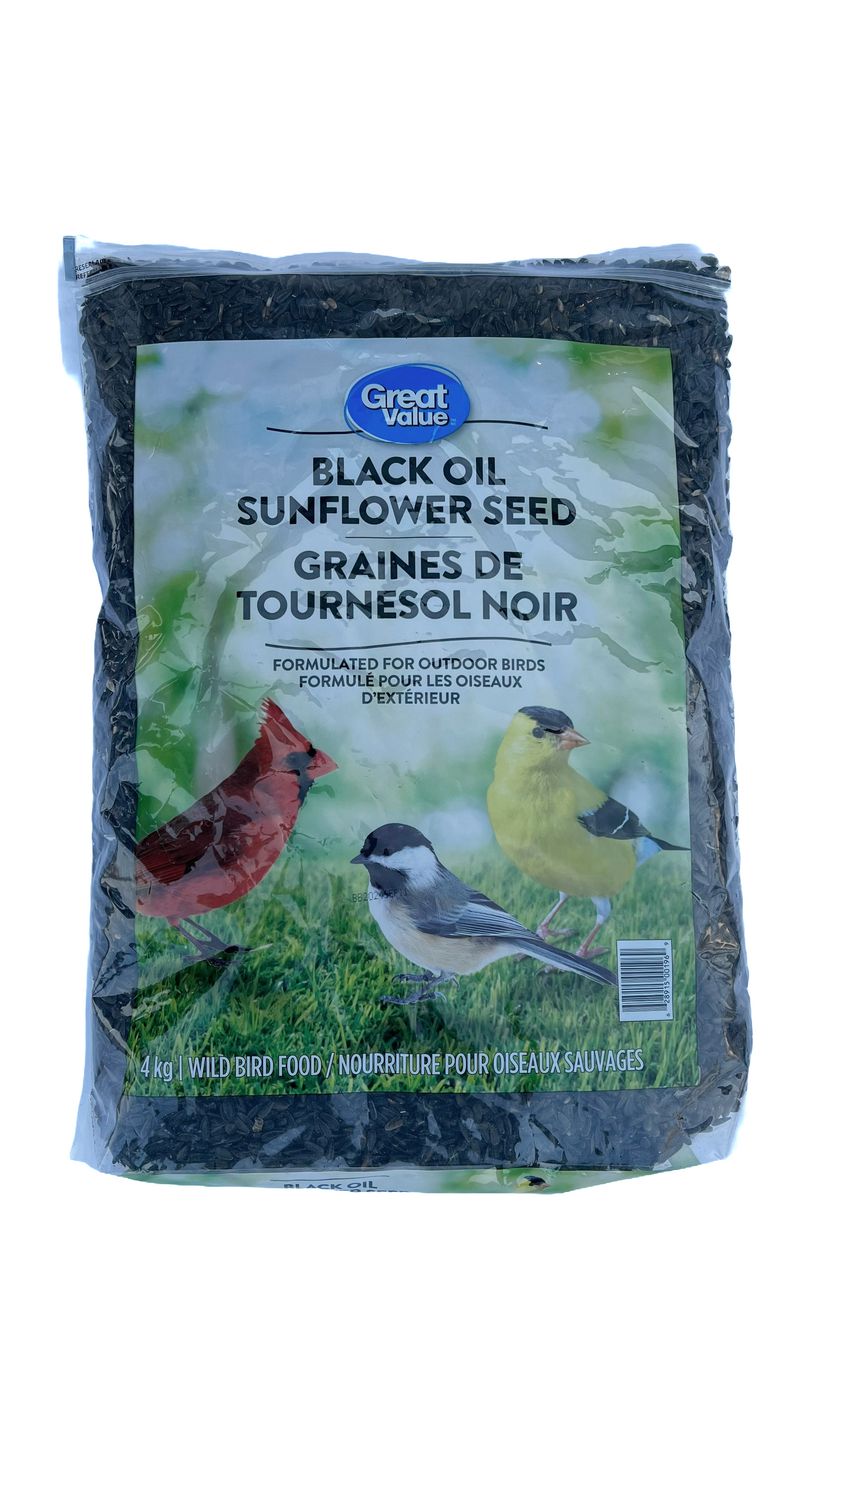 Graines de tournesol noir pour oiseaux sauvages, 2 kg